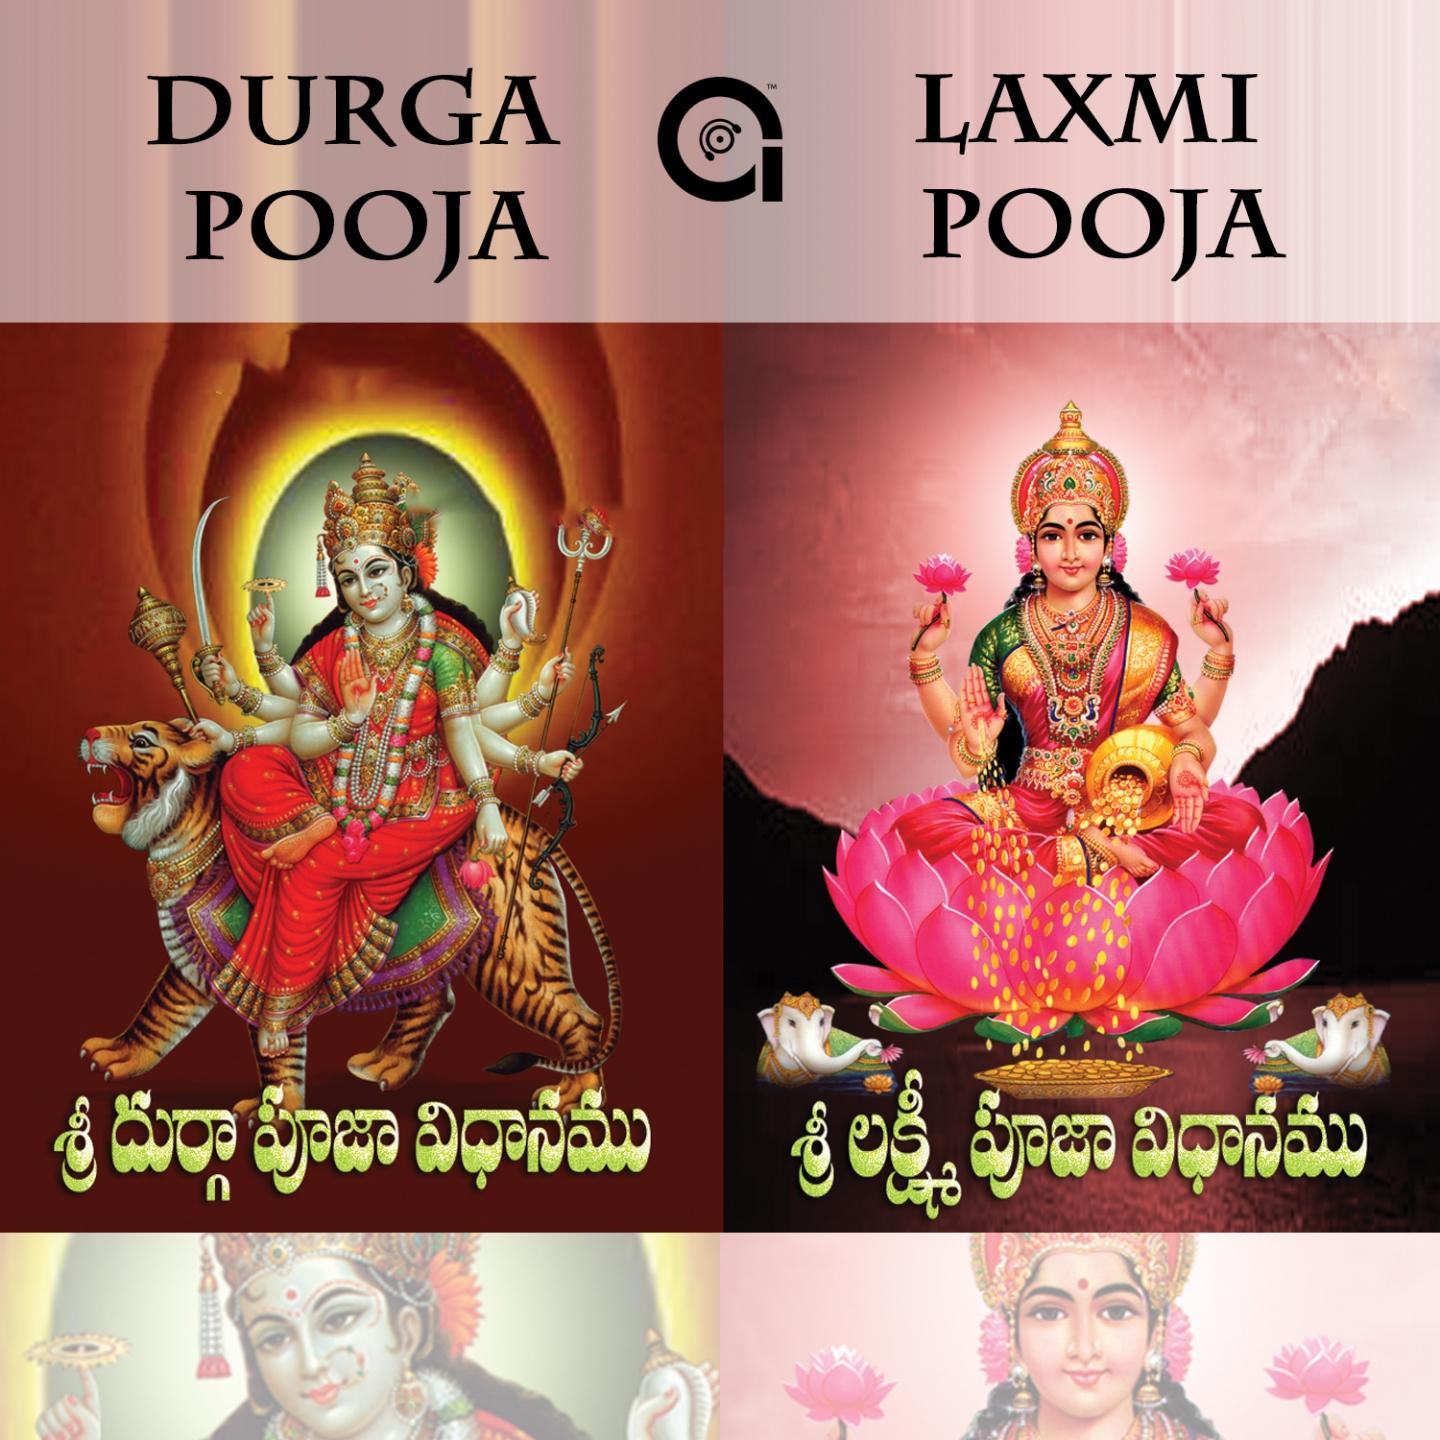 Durga Pooja & Laxmi Pooja